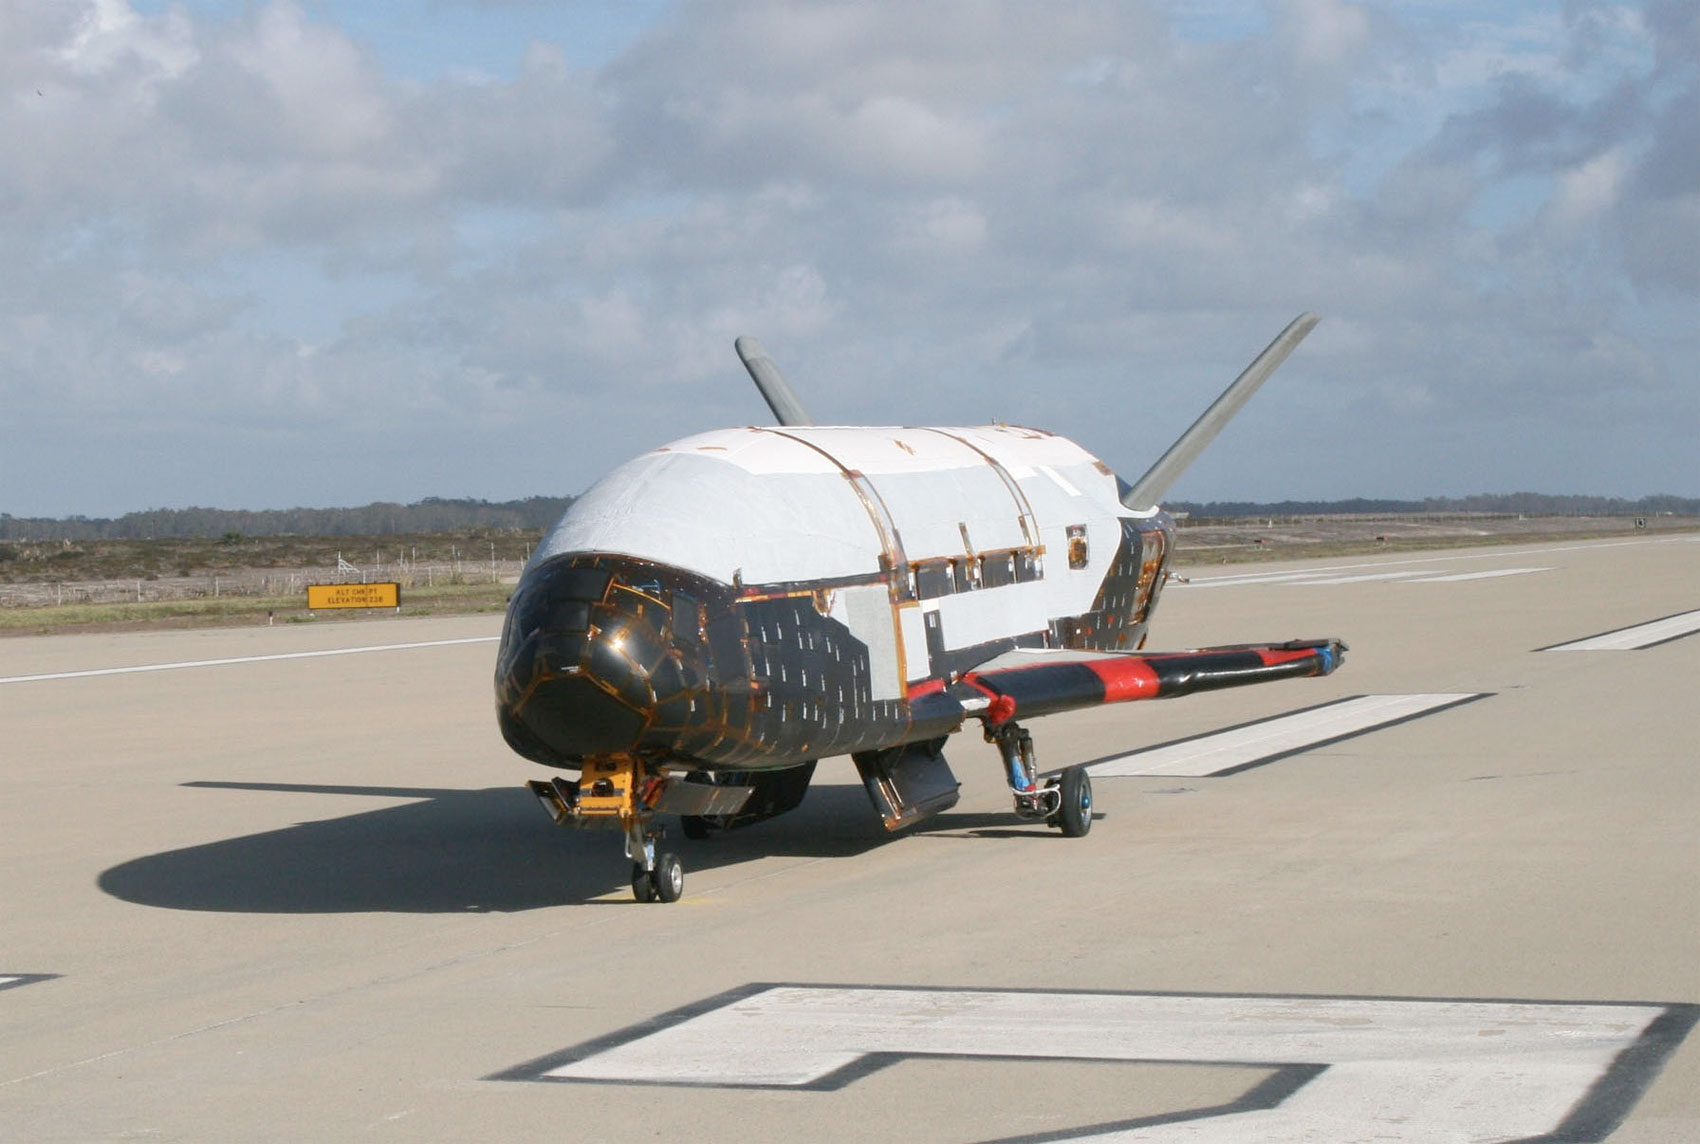 Un des deux exemplaires connus de X-37B. L'engin ressemble beaucoup aux navettes spatiales de la Nasa avec des dimensions bien plus faibles. La longueur est de moins de 9 m. © US Air Force